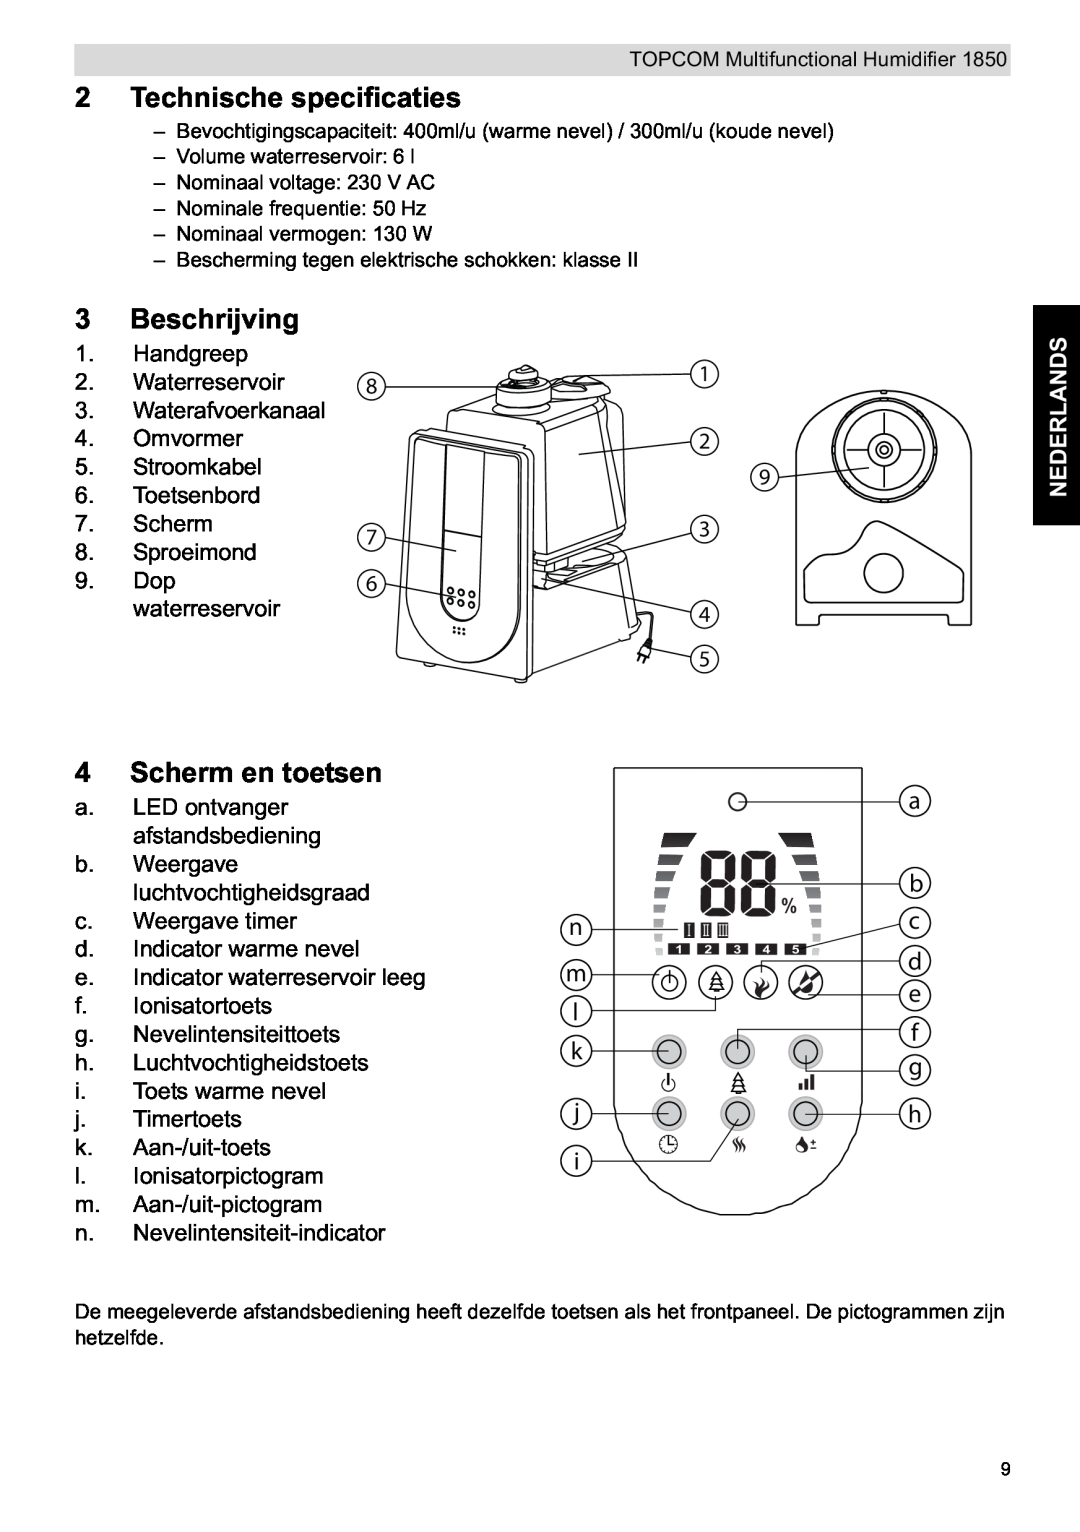 Topcom 1850 manual do utilizador Technische specificaties, Beschrijving, Scherm en toetsen, Nederlands 